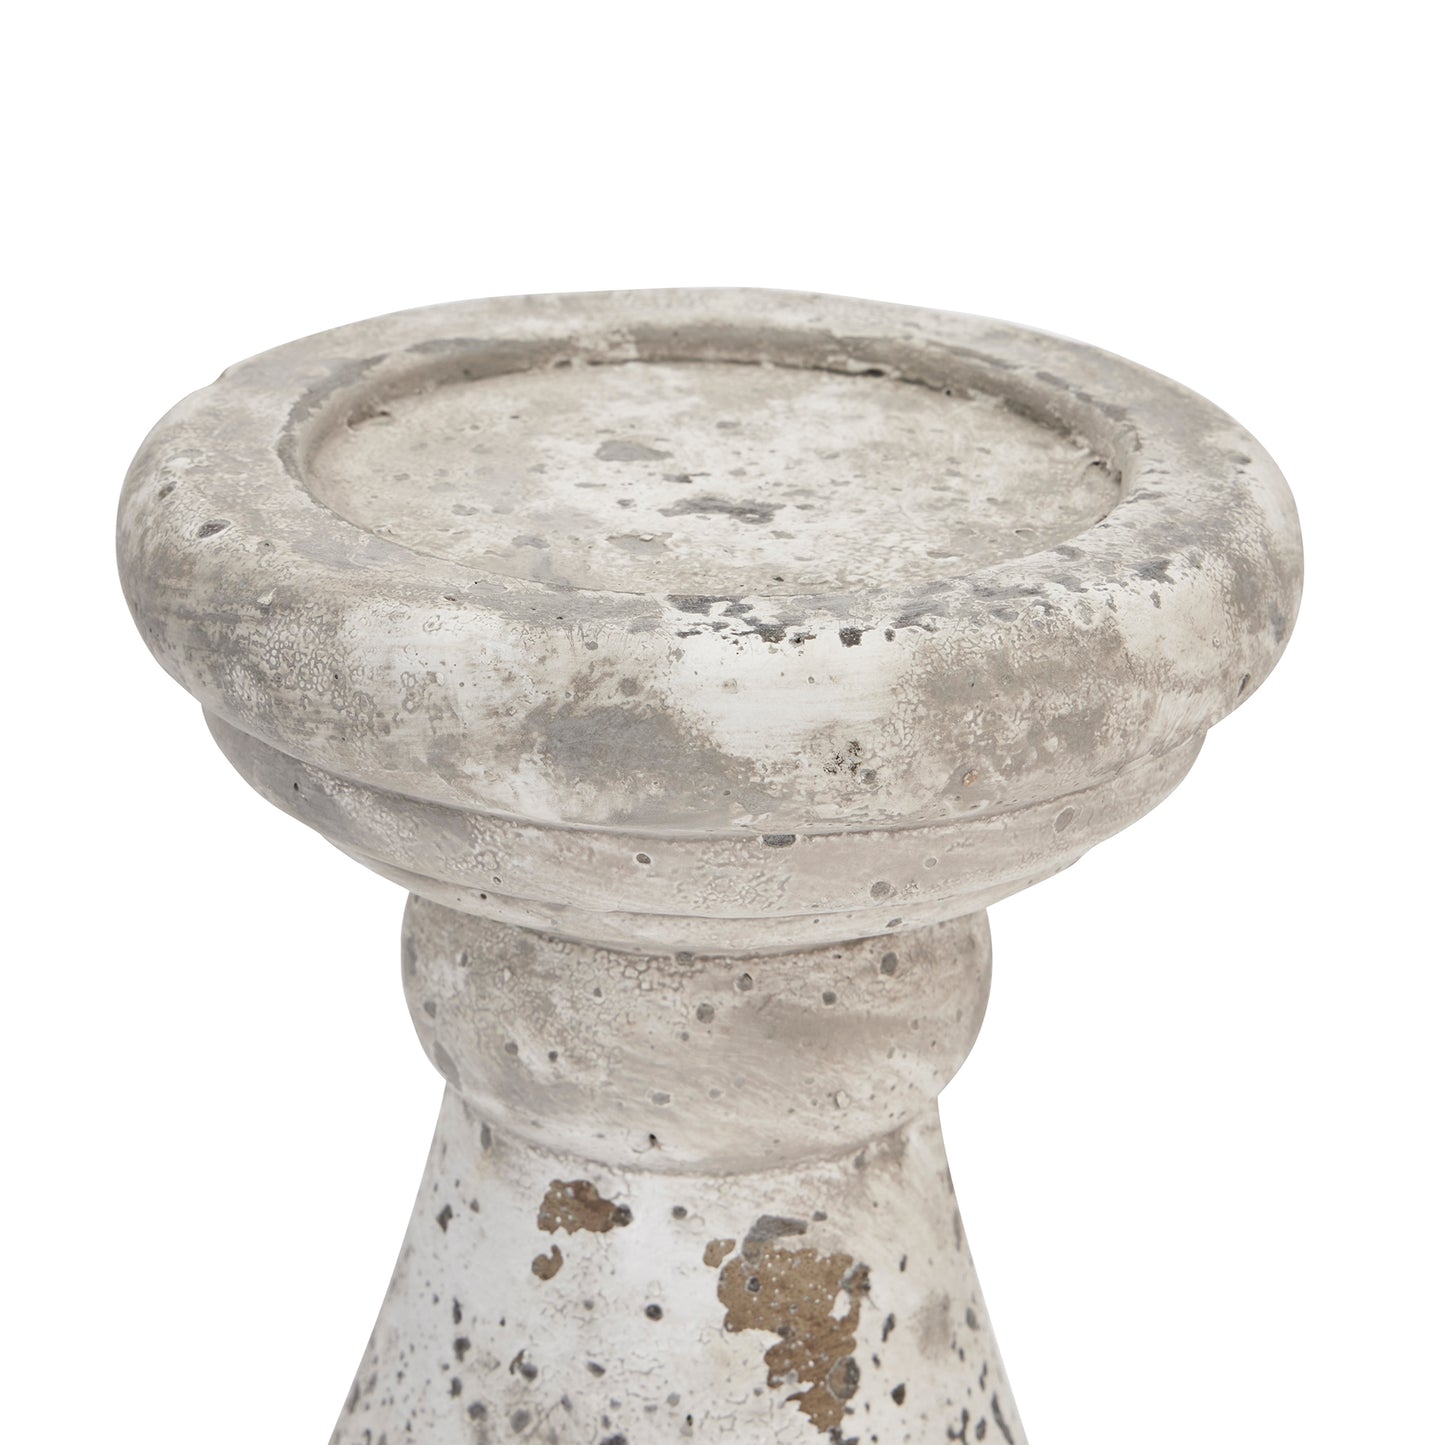 Stone Ceramic Candle Holder - Large